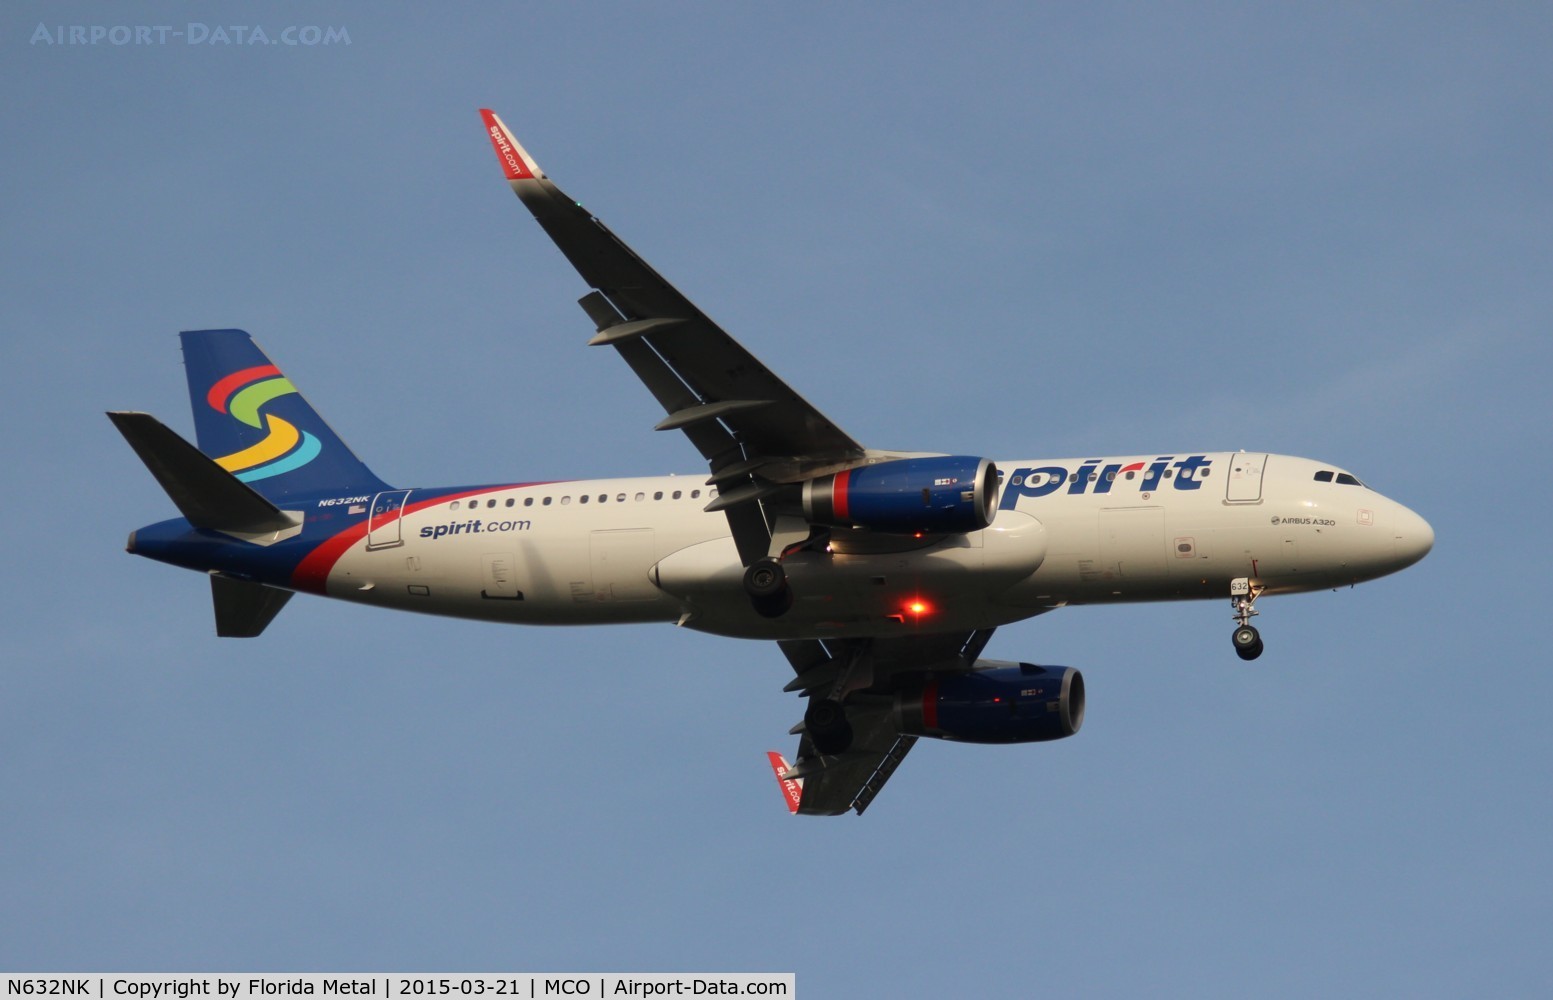 N632NK, 2014 Airbus A320-232 C/N 6331, Spirit